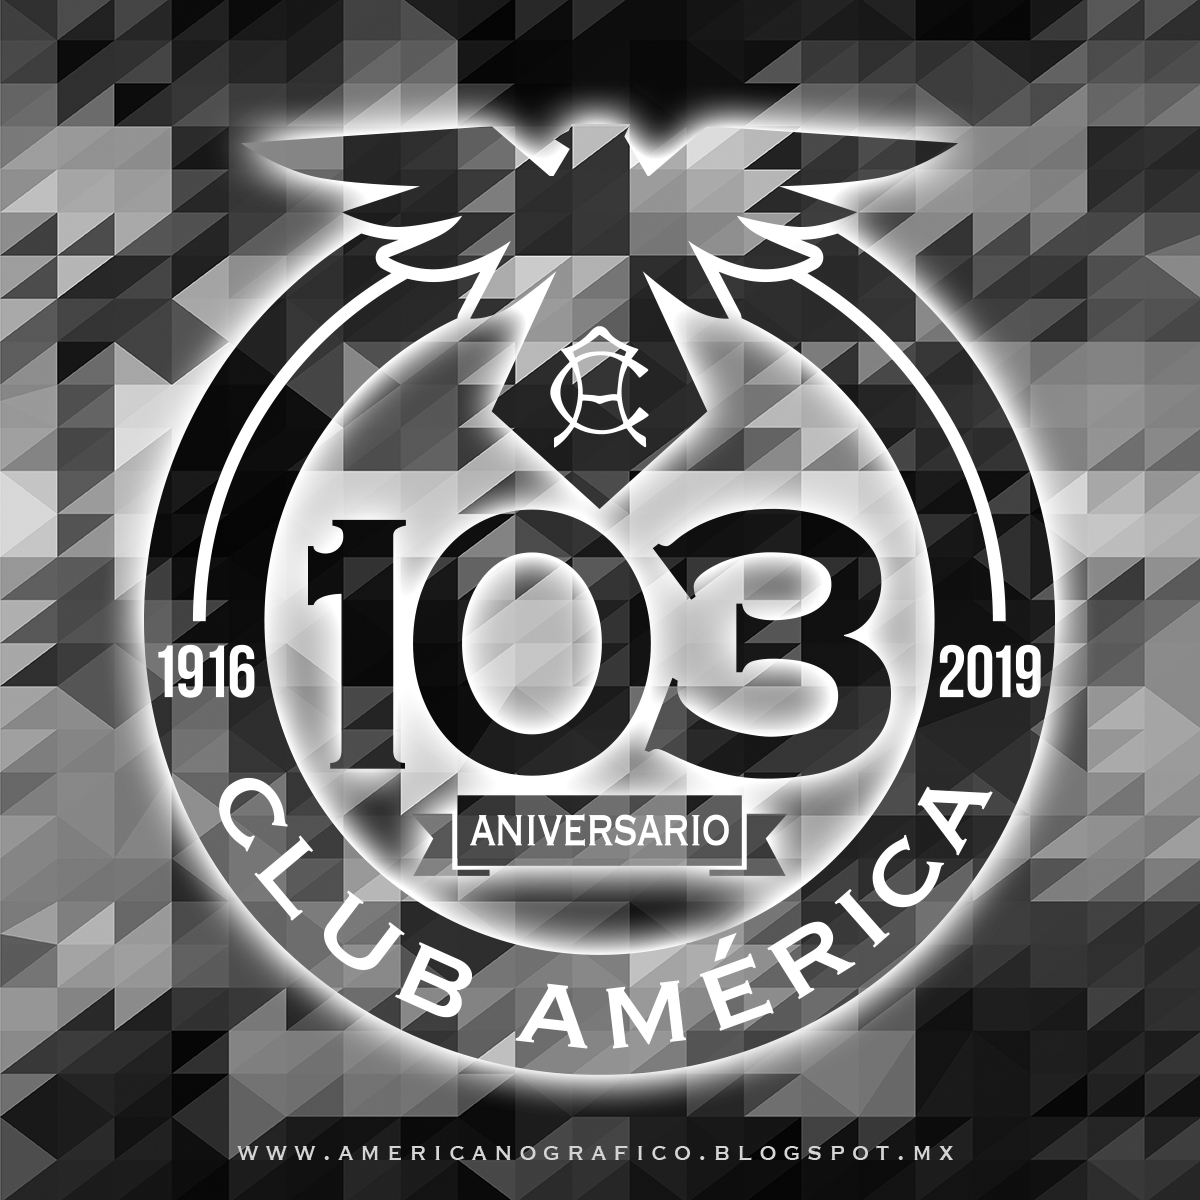 AMERICAnografico: 103 Años del más grande, el Club América.